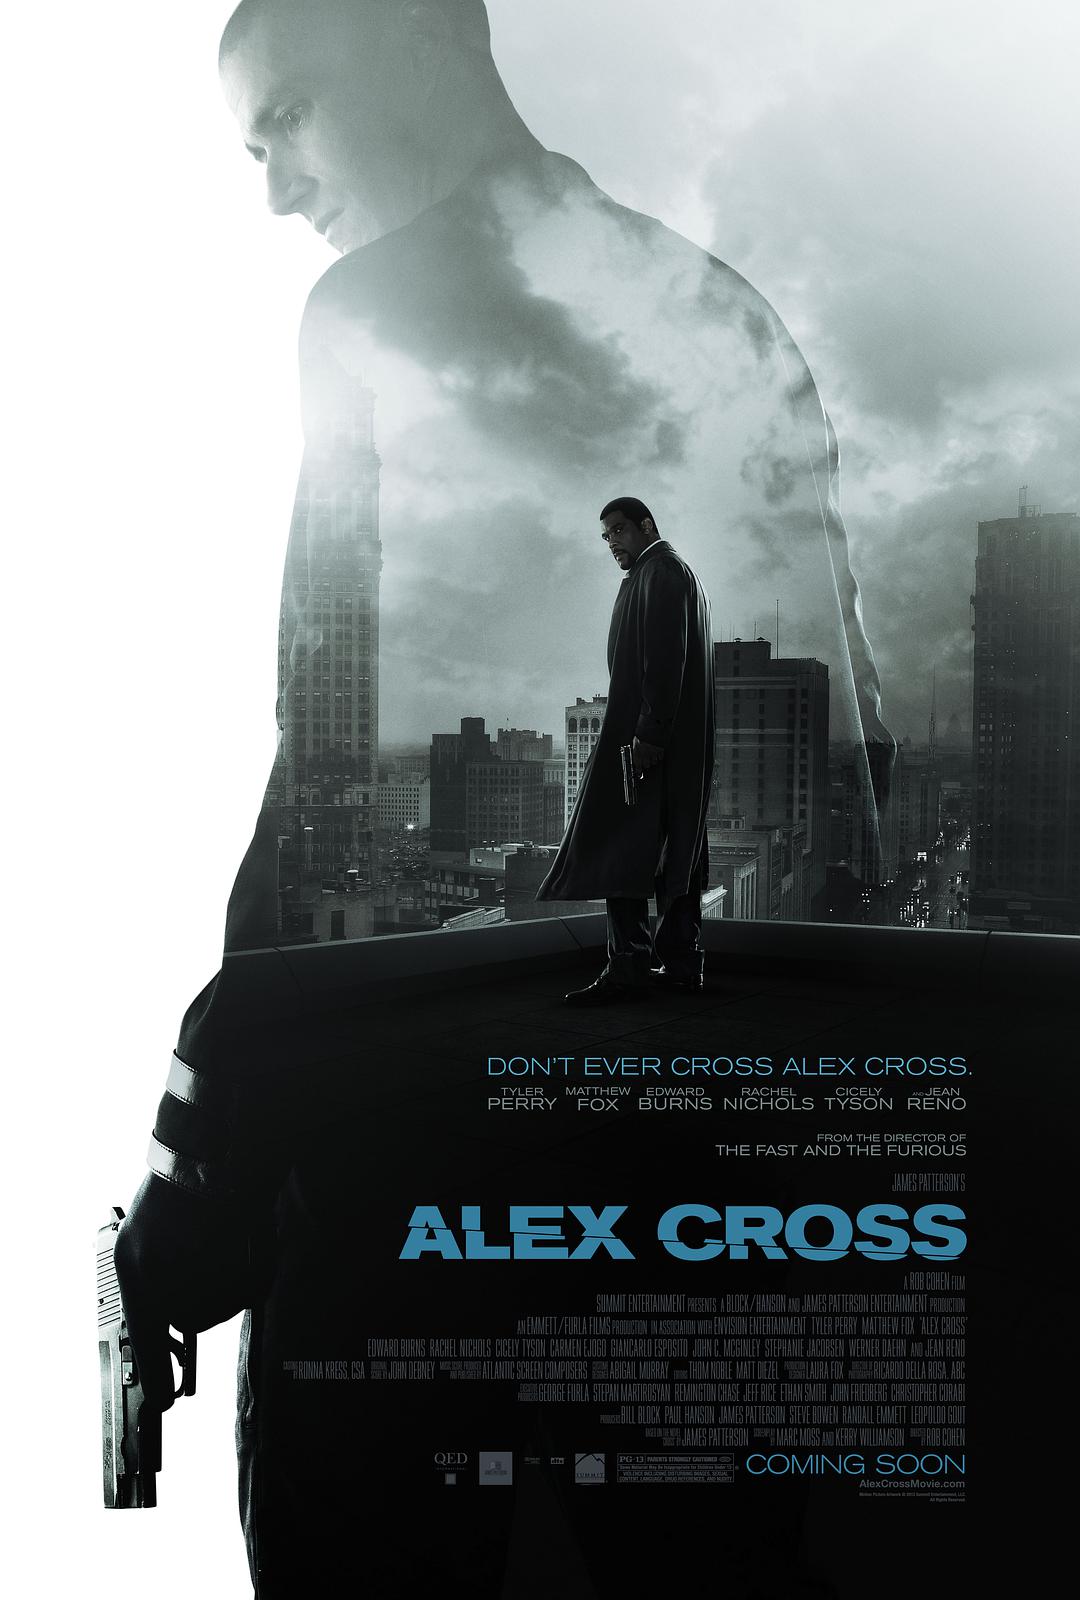 亚历克斯·克洛斯.神探追缉令. FBI重装戒备 [港版原盘简繁中字] Alex Cross 2012 HK Blu-Ray 1080p AVC TrueHD 7.1-BDarea [20.92 GB]